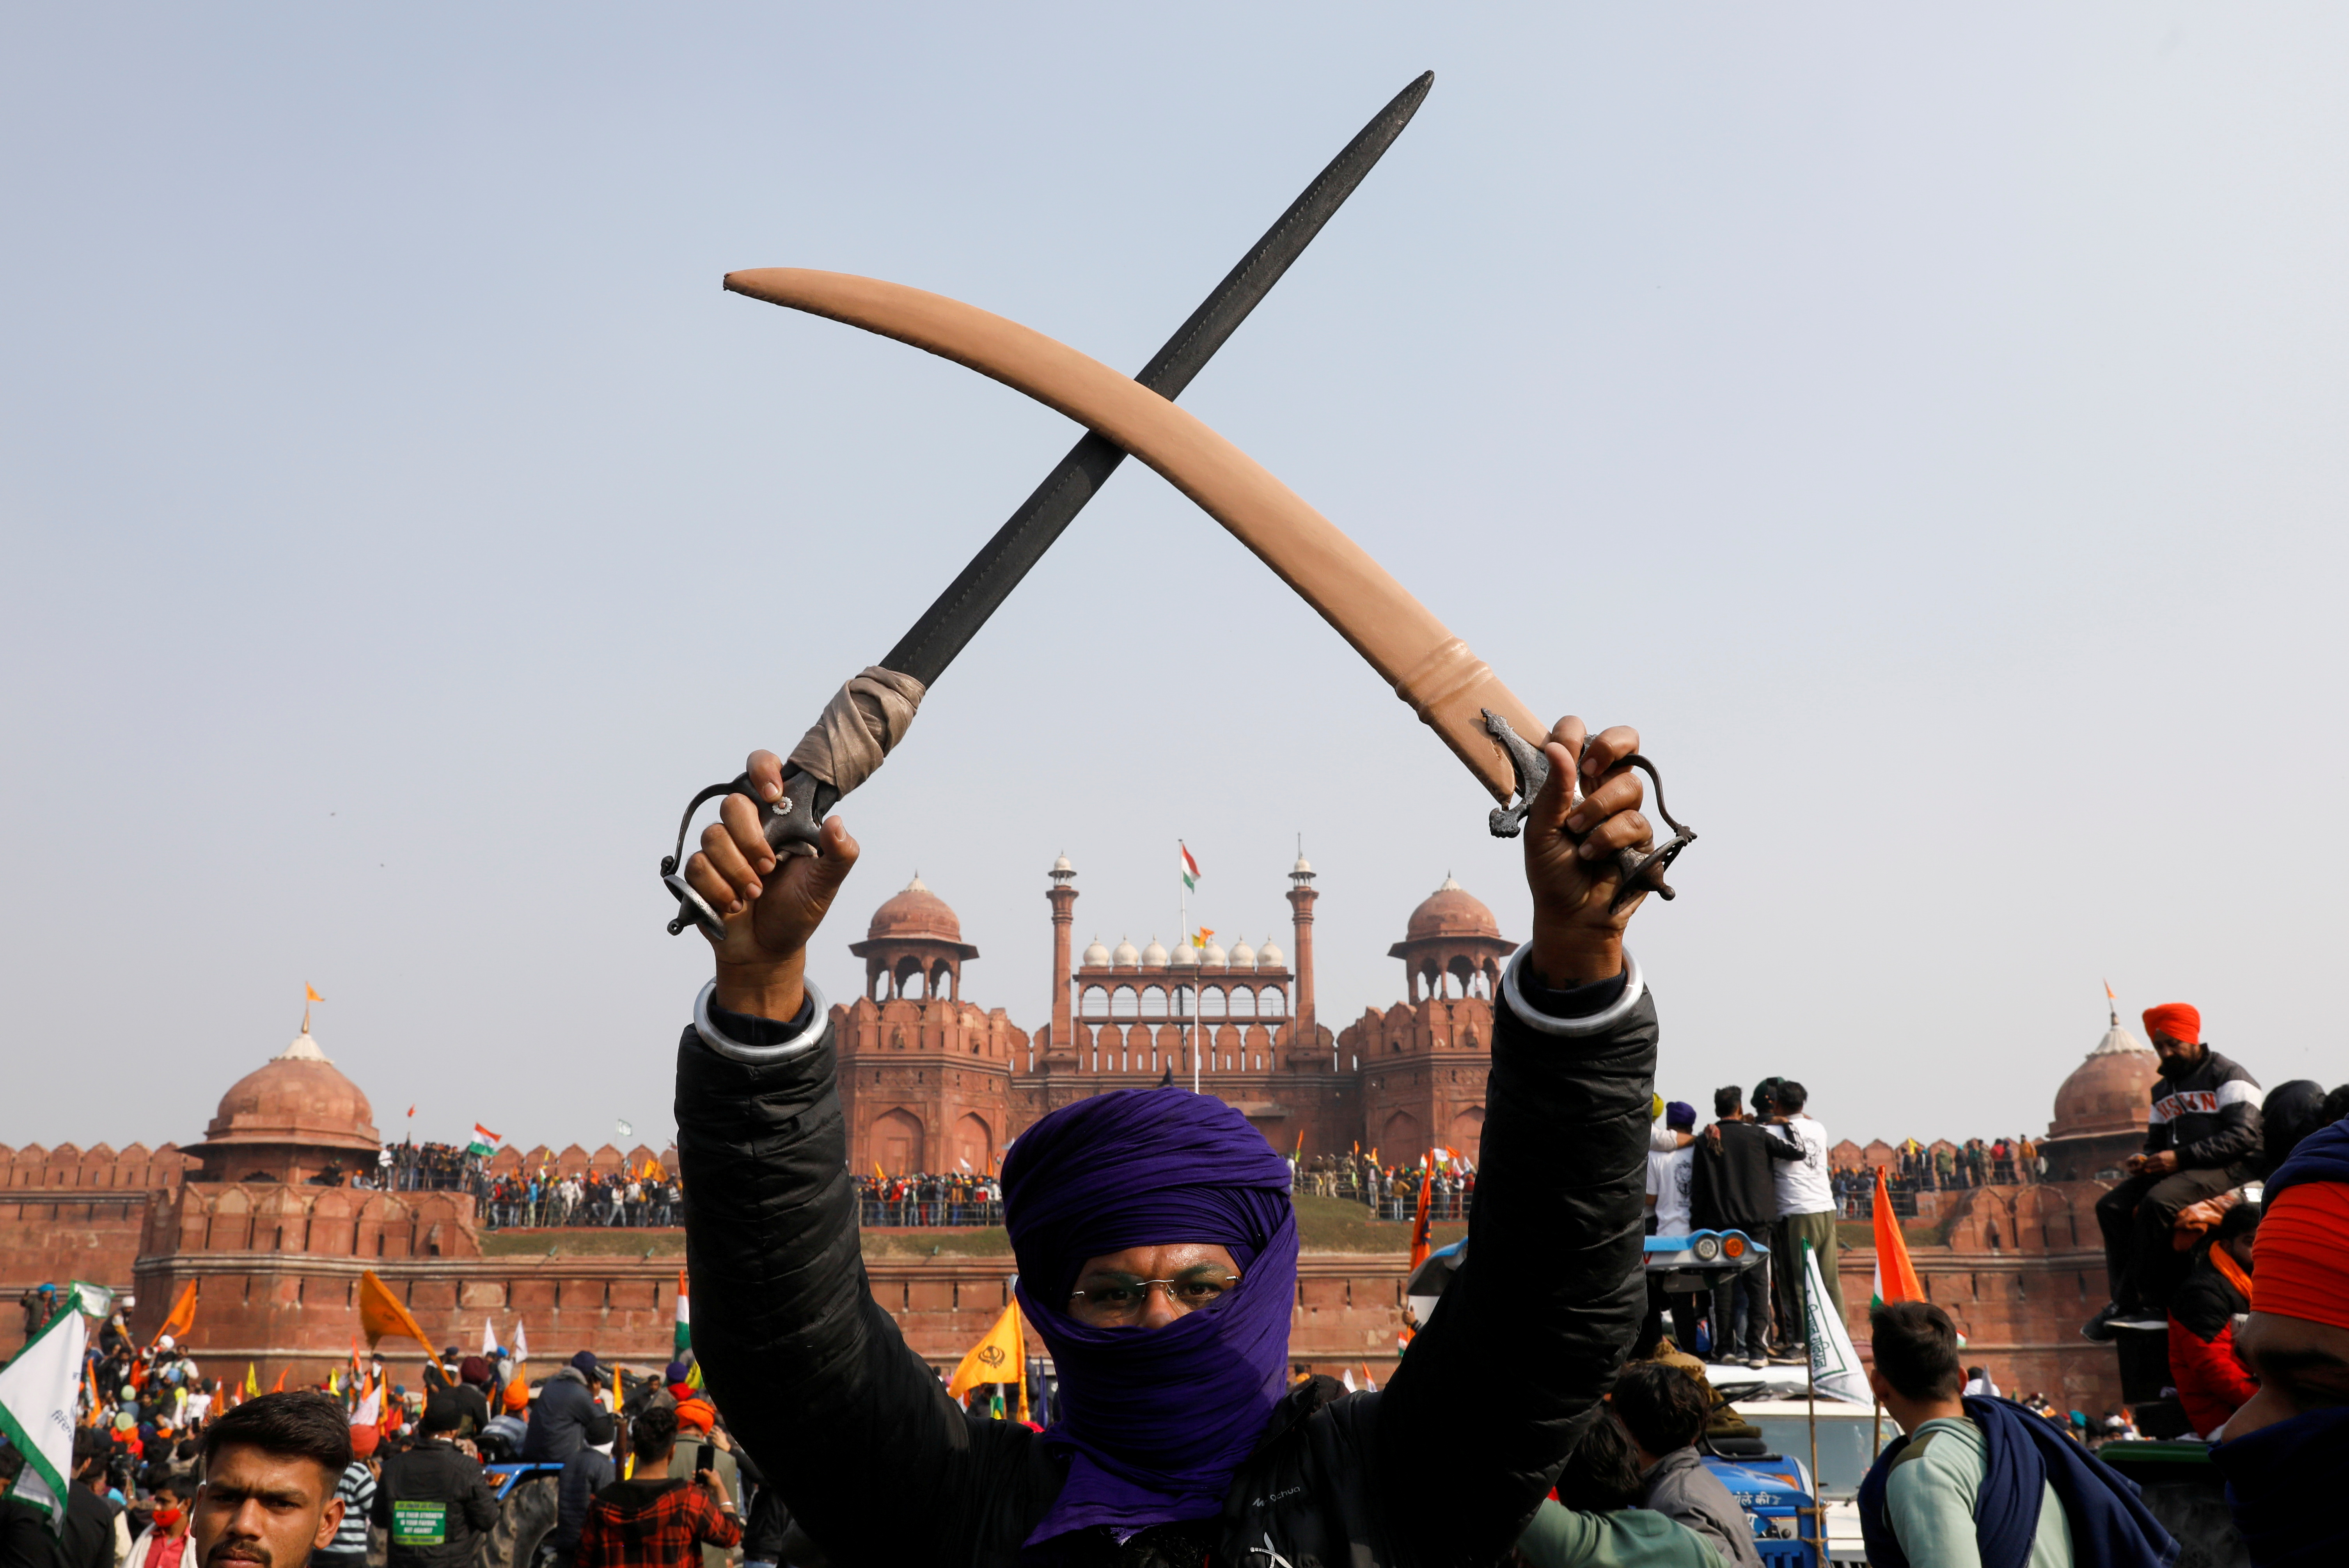 Un agricultor sostiene una espada durante una protesta contra las leyes agrícolas introducidas por el gobierno en el histórico Fuerte Rojo de Delhi, el 26 de enero de 2021 (REUTERS/Adnan Abidi)